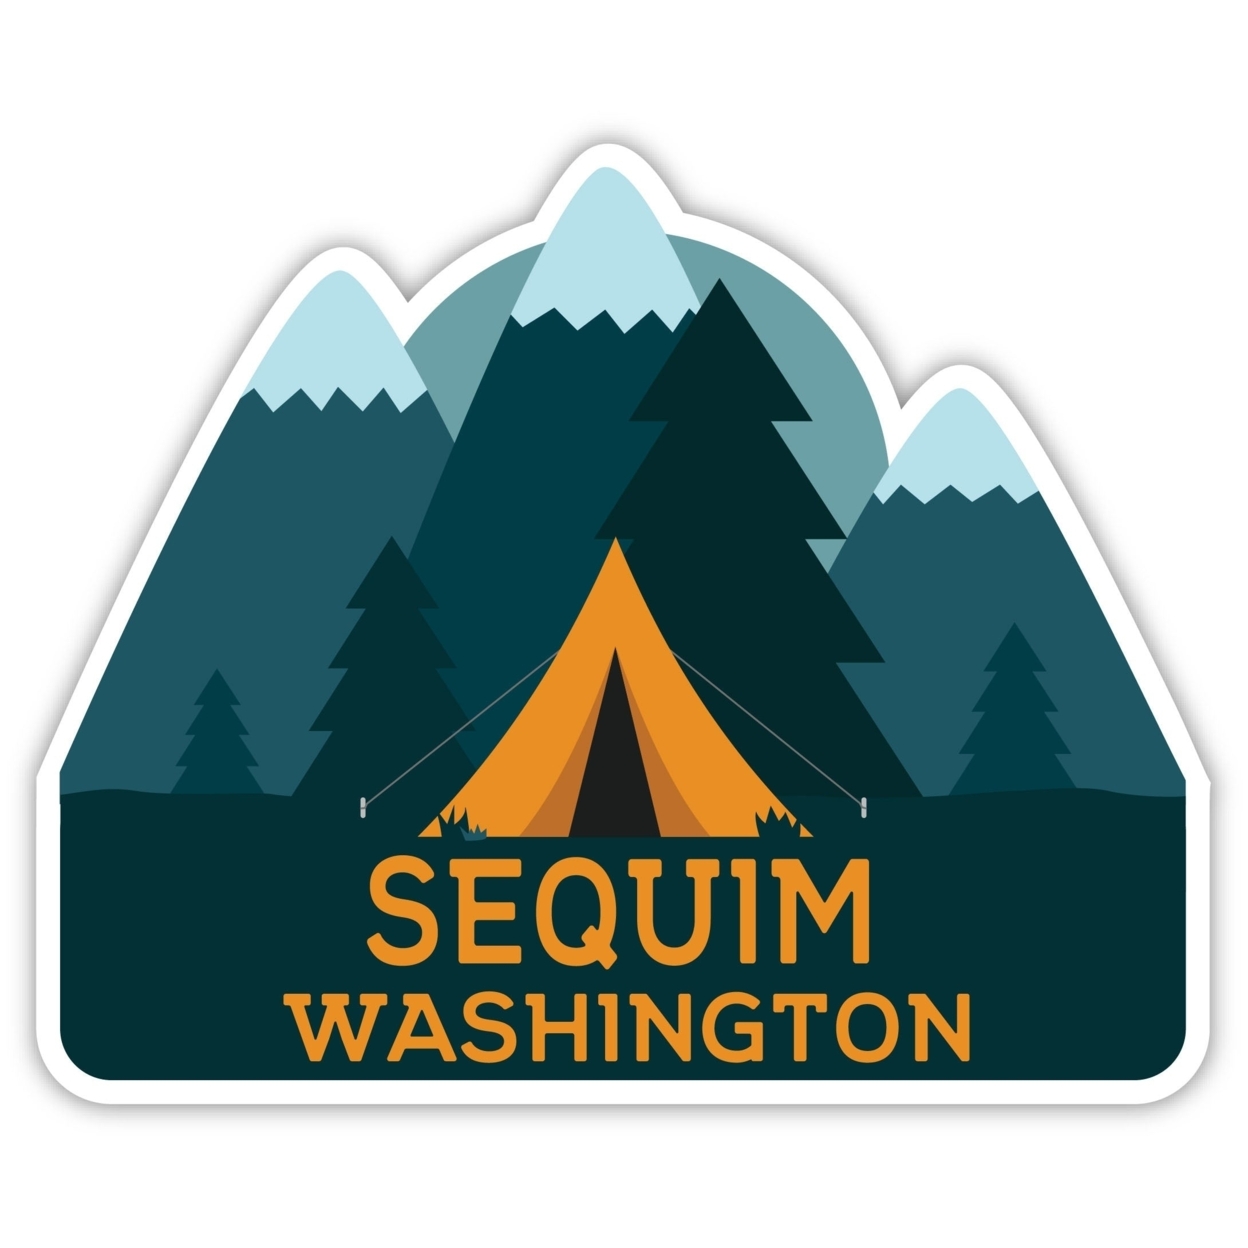 Sequim Washington Souvenir Decorative Stickers (Choose Theme And Size) - Single Unit, 4-Inch, Tent